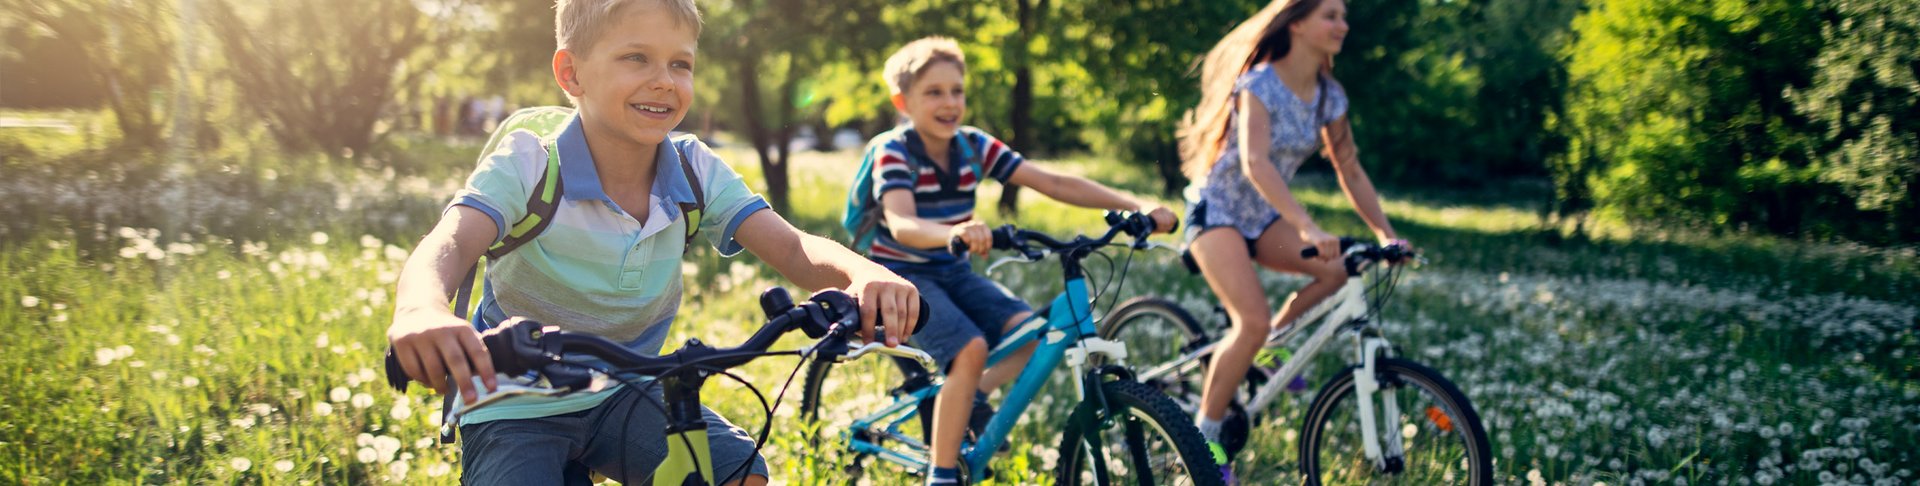 Drei Kinder fahren mit ihren Fahrrädern über eine Blumenwiese.